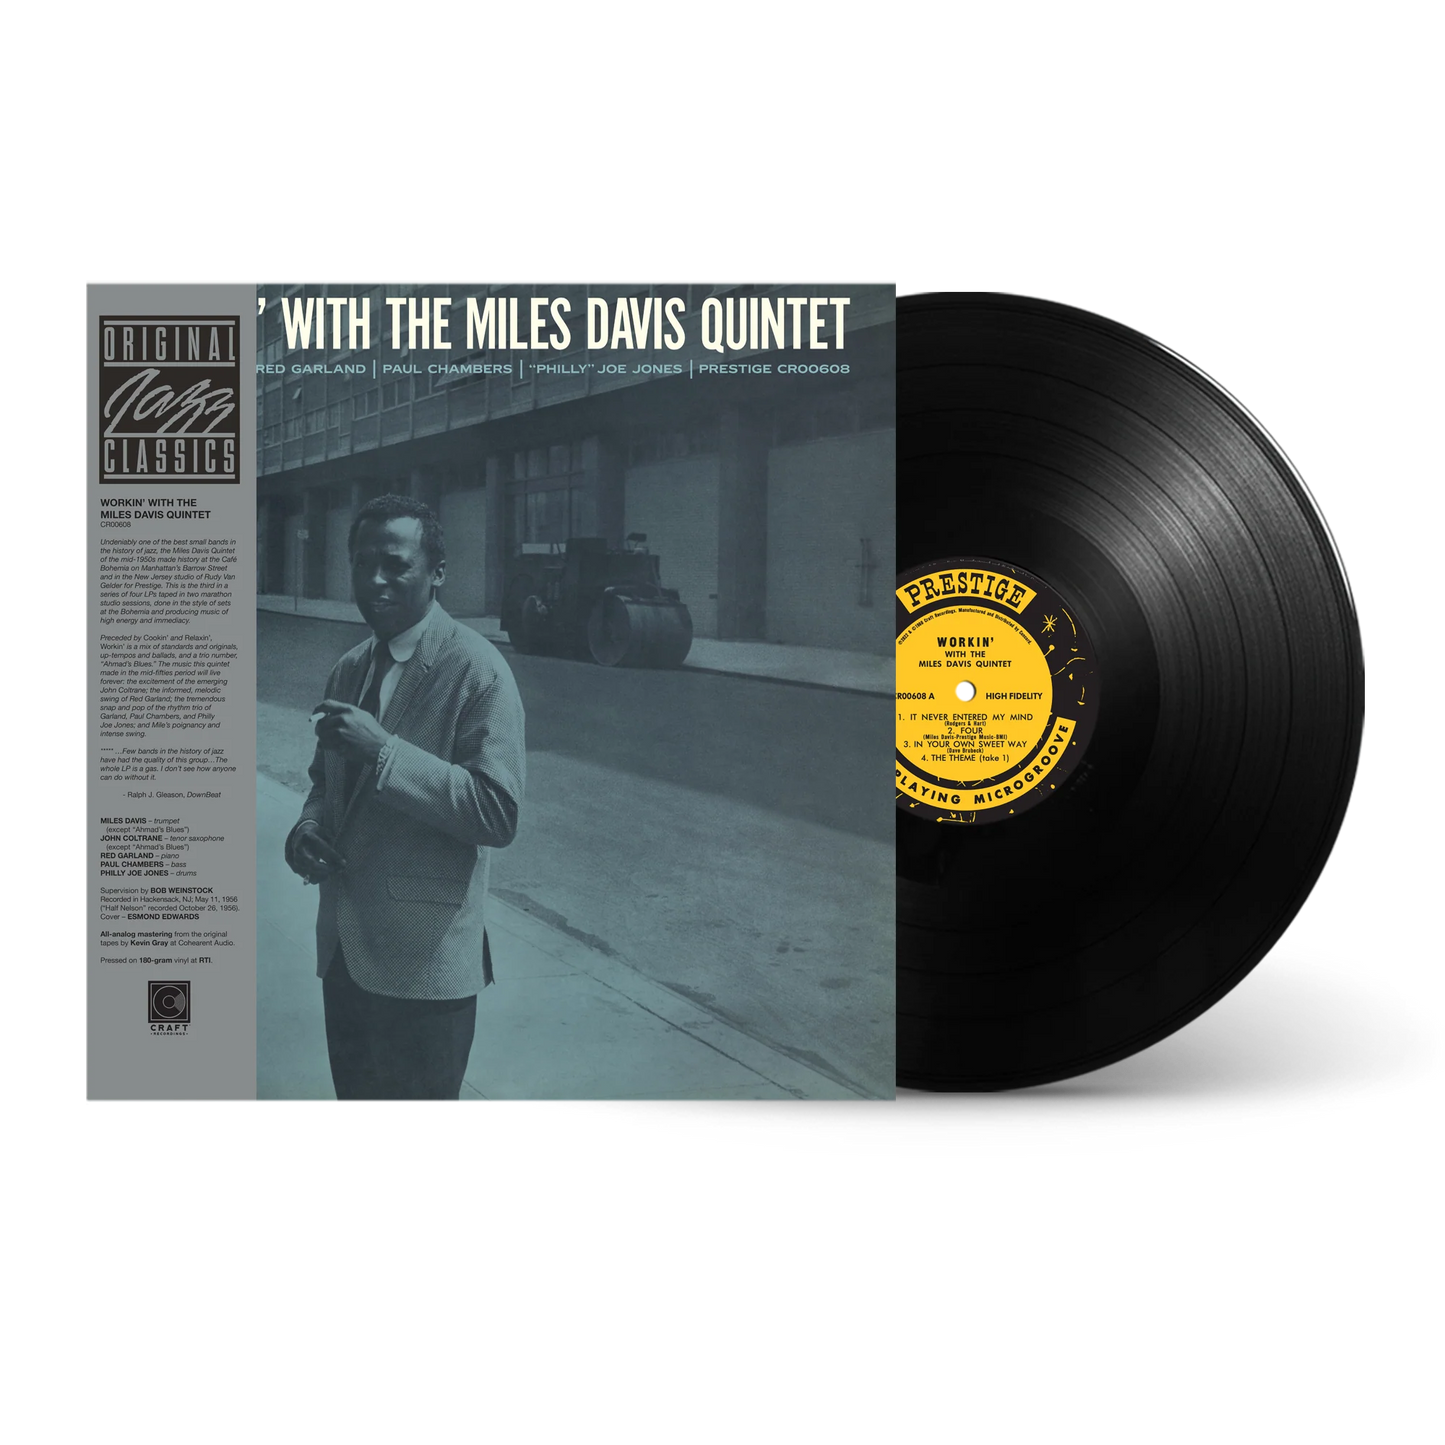 Miles Davis - Workin' With The Miles Davis Quintet - OJC LP